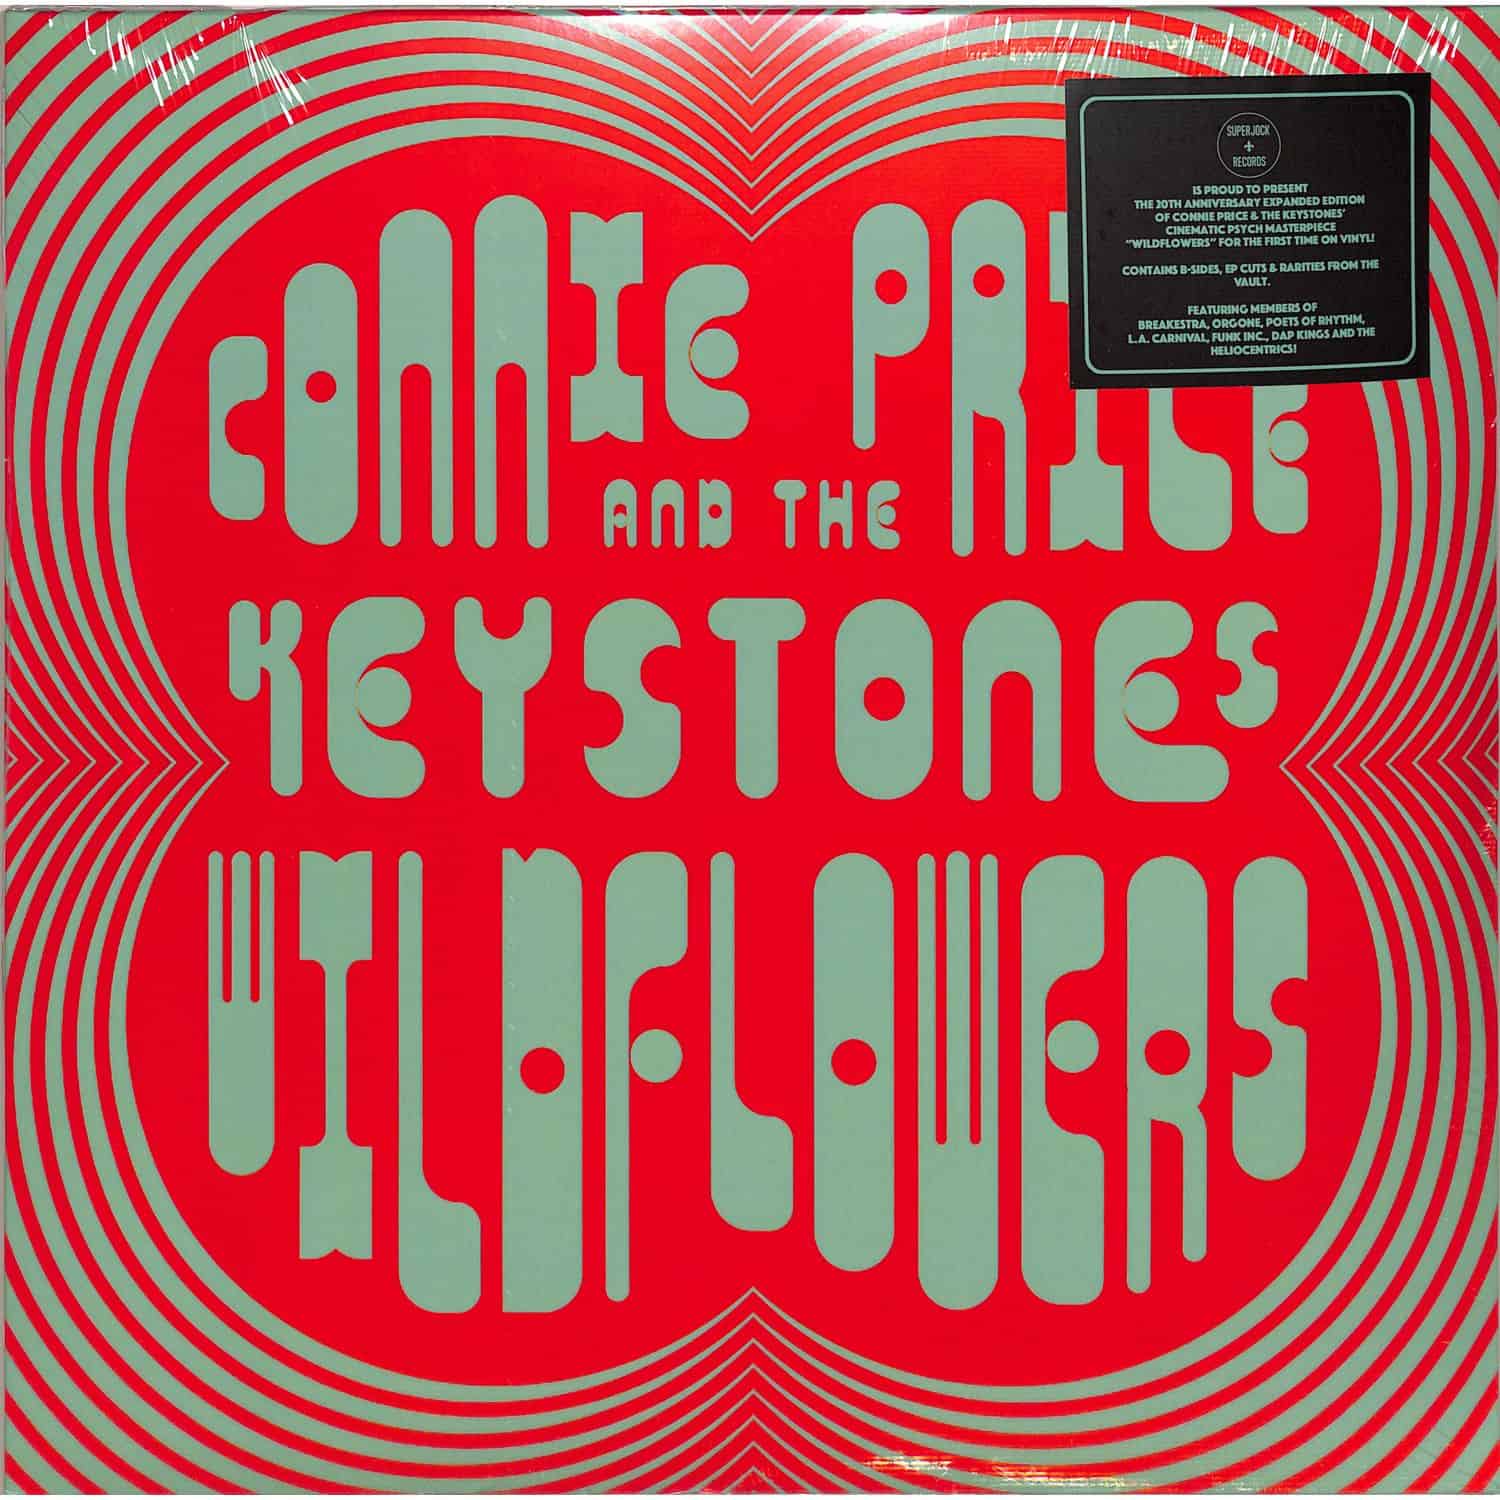 Connie Price & They Keystones - WILDFLOWERS 